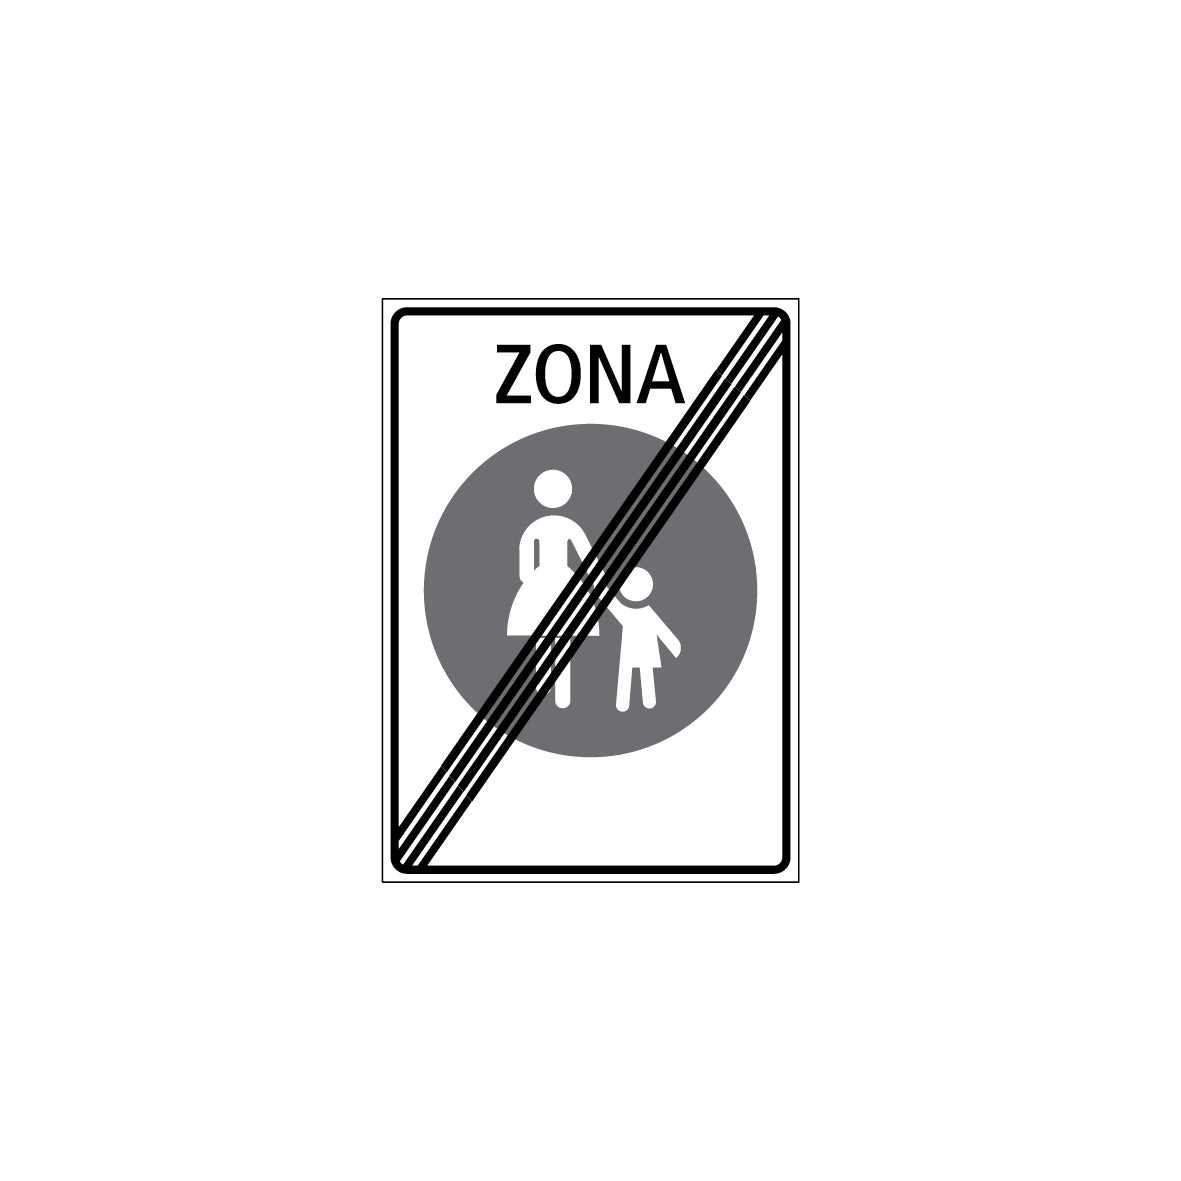 Zonensignal, Ende der Zone, 2.59.4b